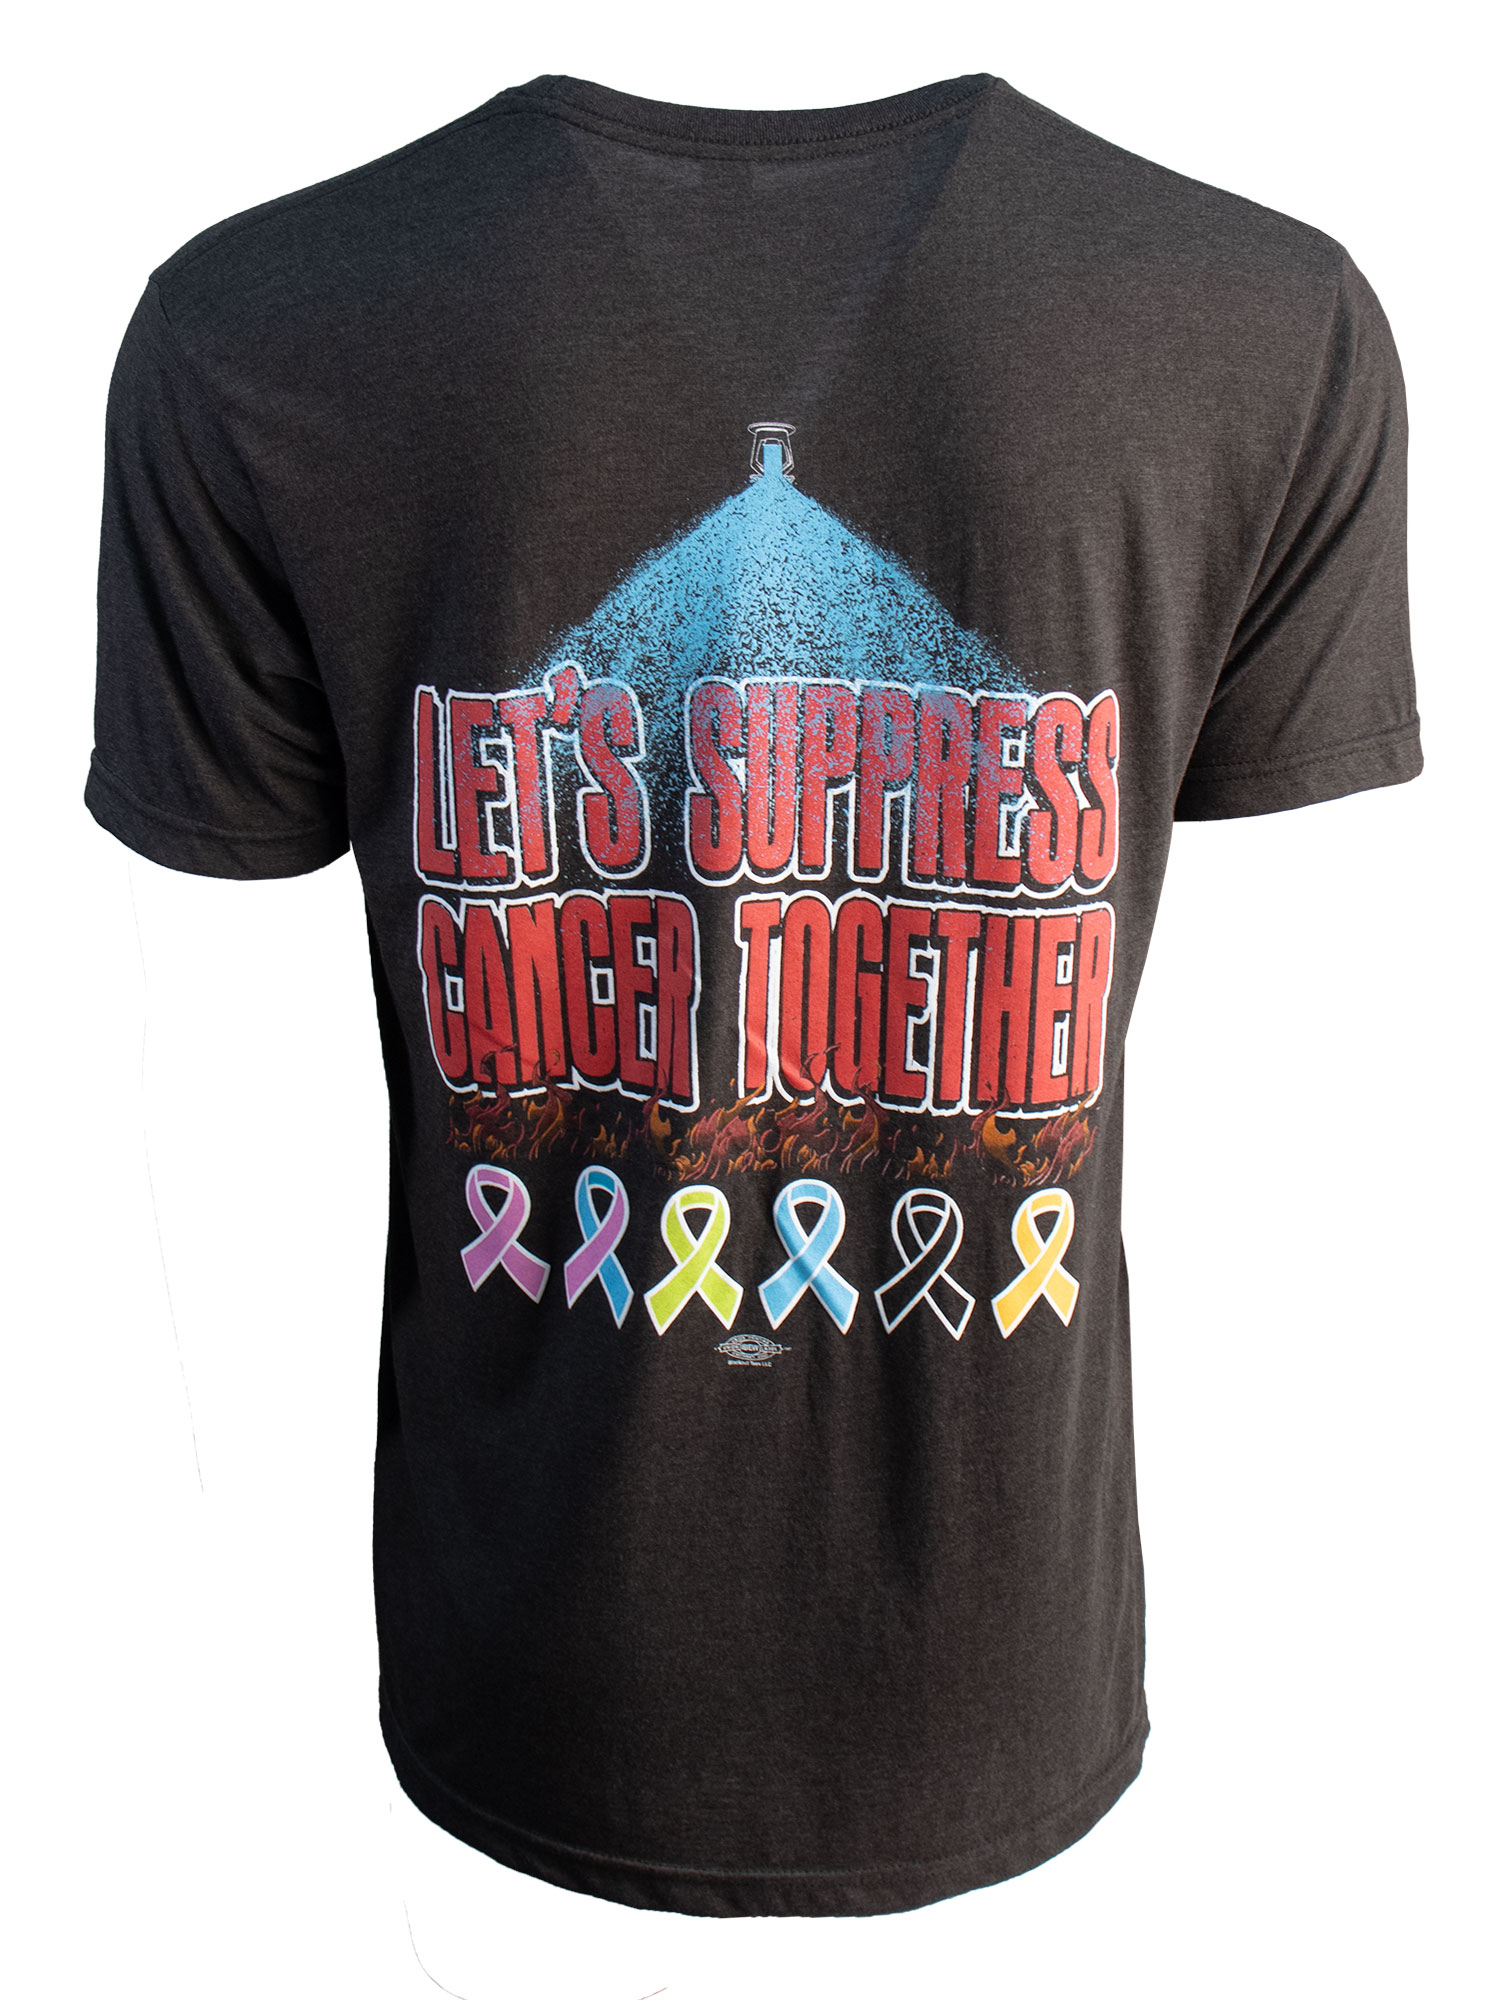 Suppress Cancer T-Shirt